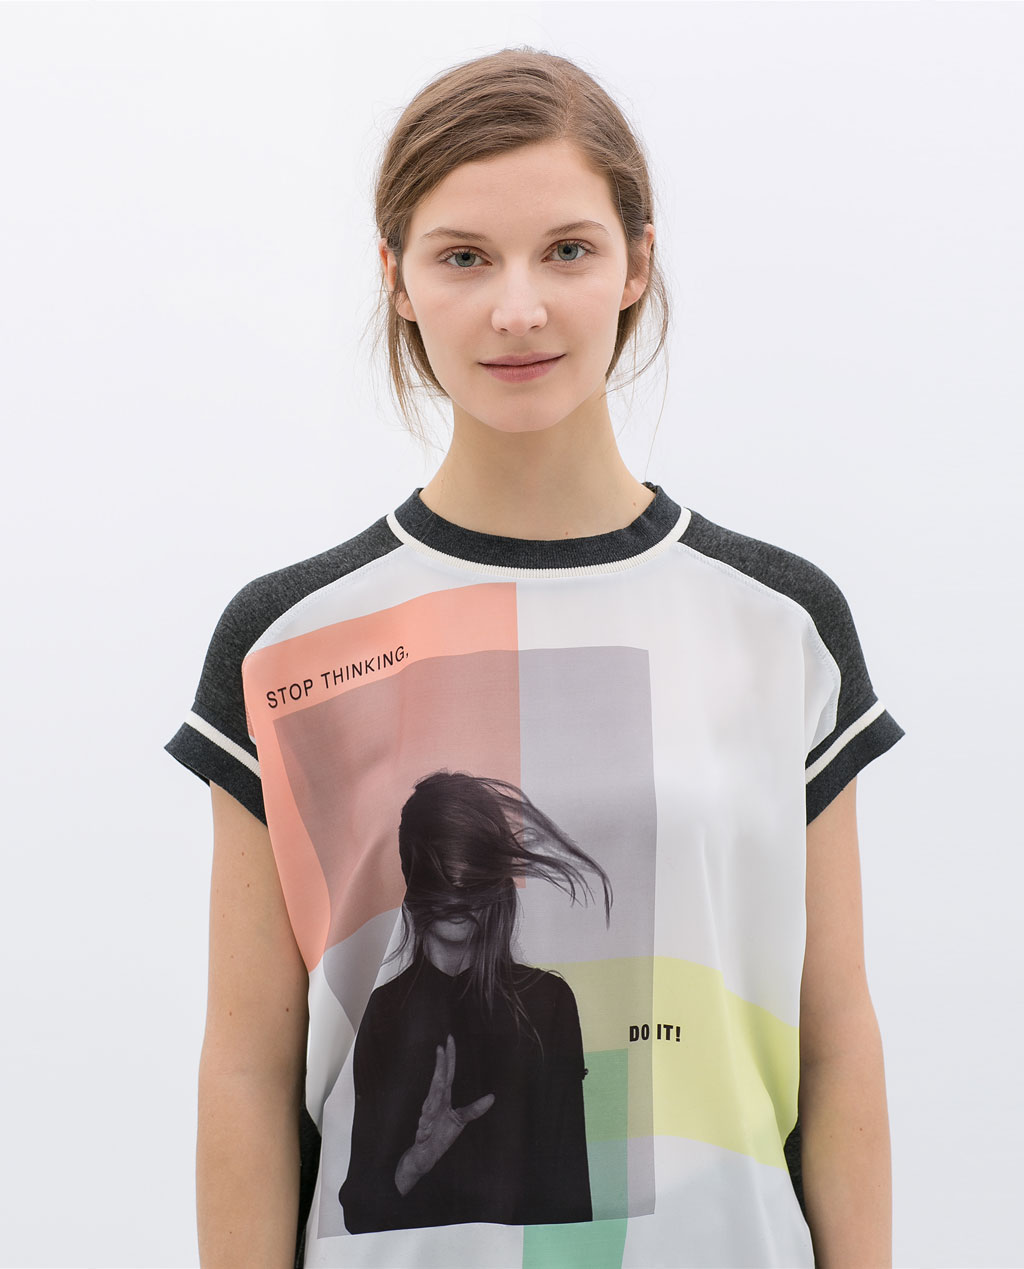 Zara Spring Summer Collection For Women 2014-2015 (9)